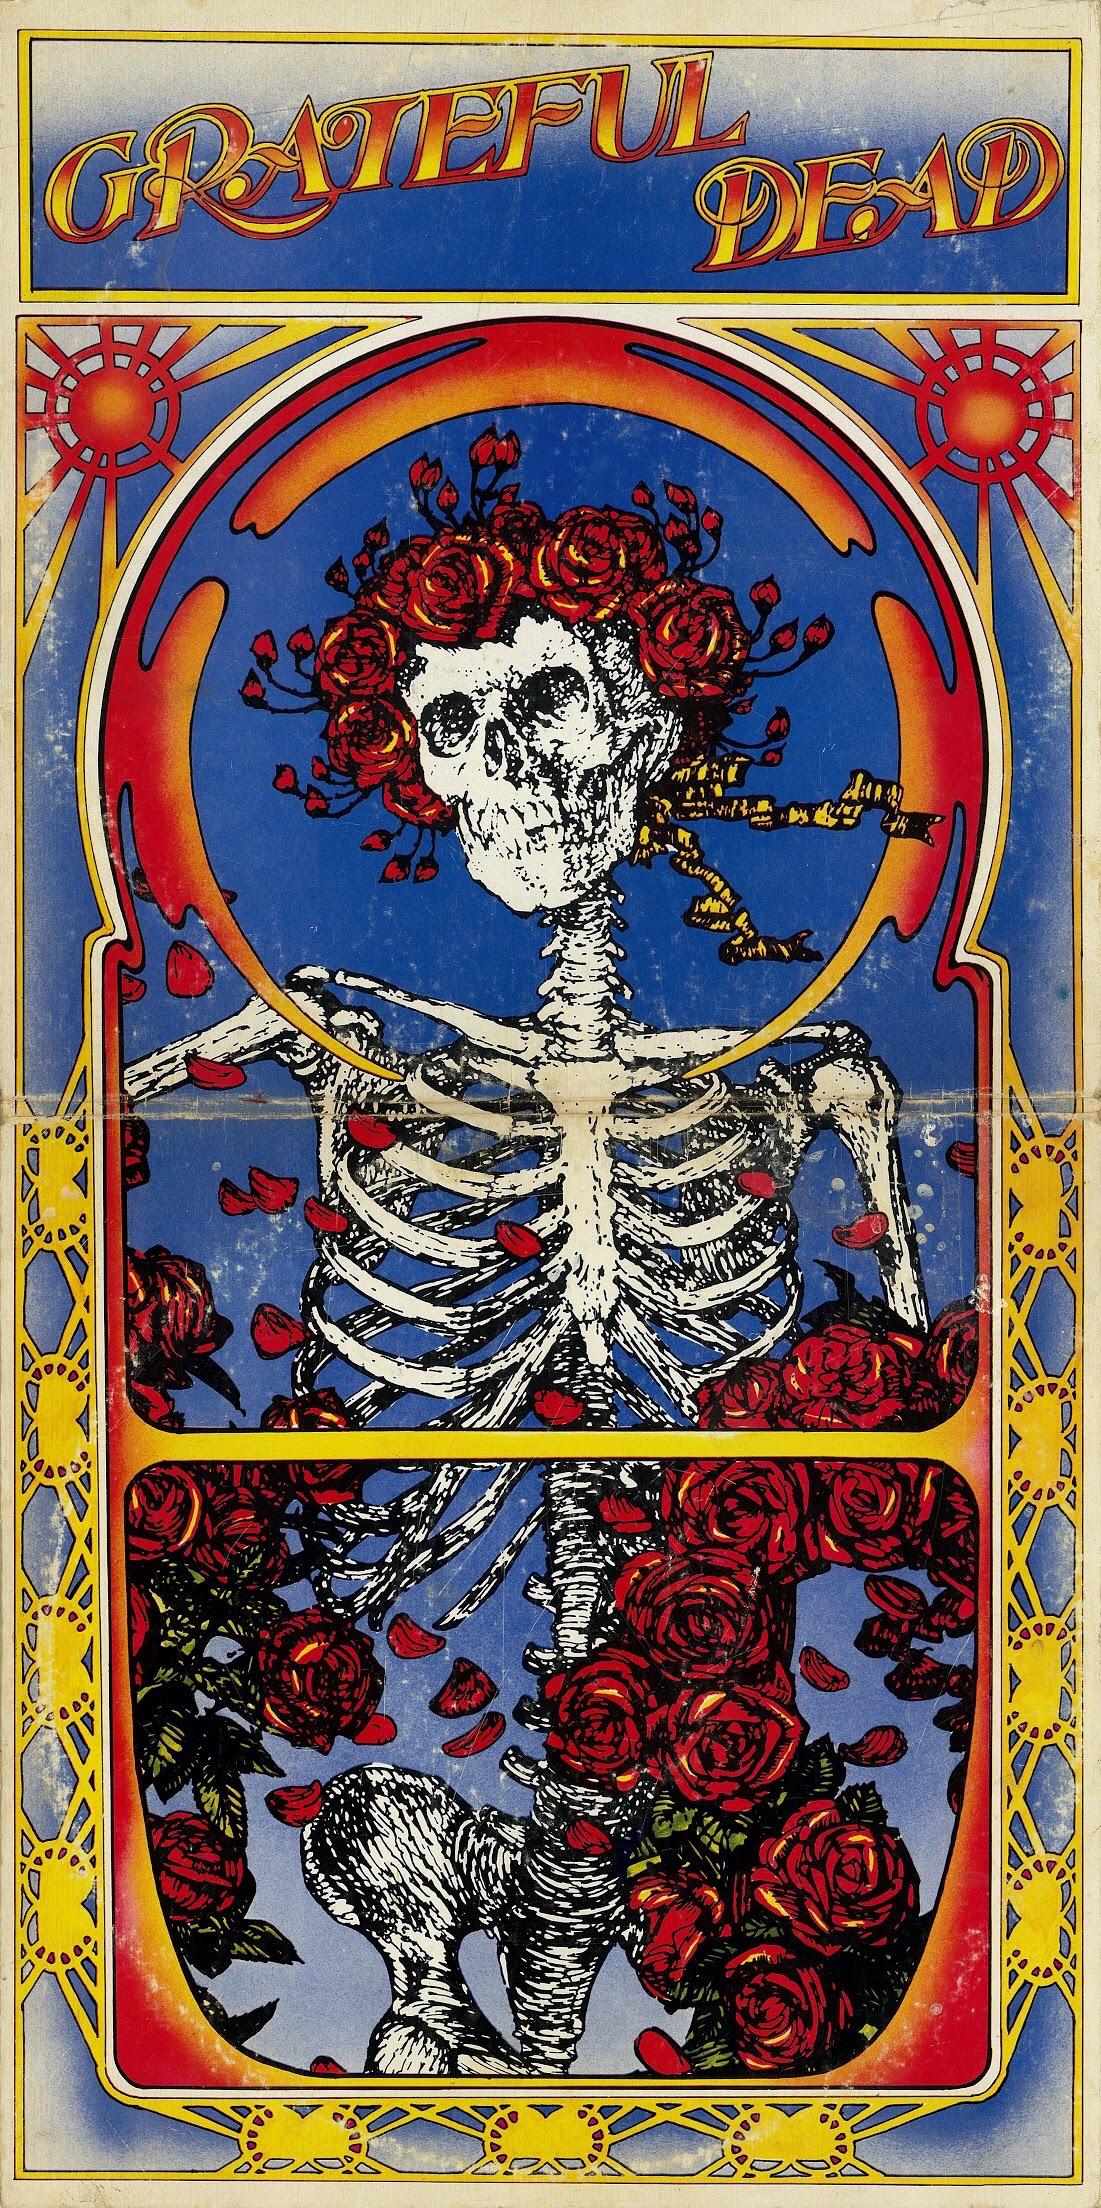 Grateful Dead (Live) 'Skull and Roses' 1971 full album cover